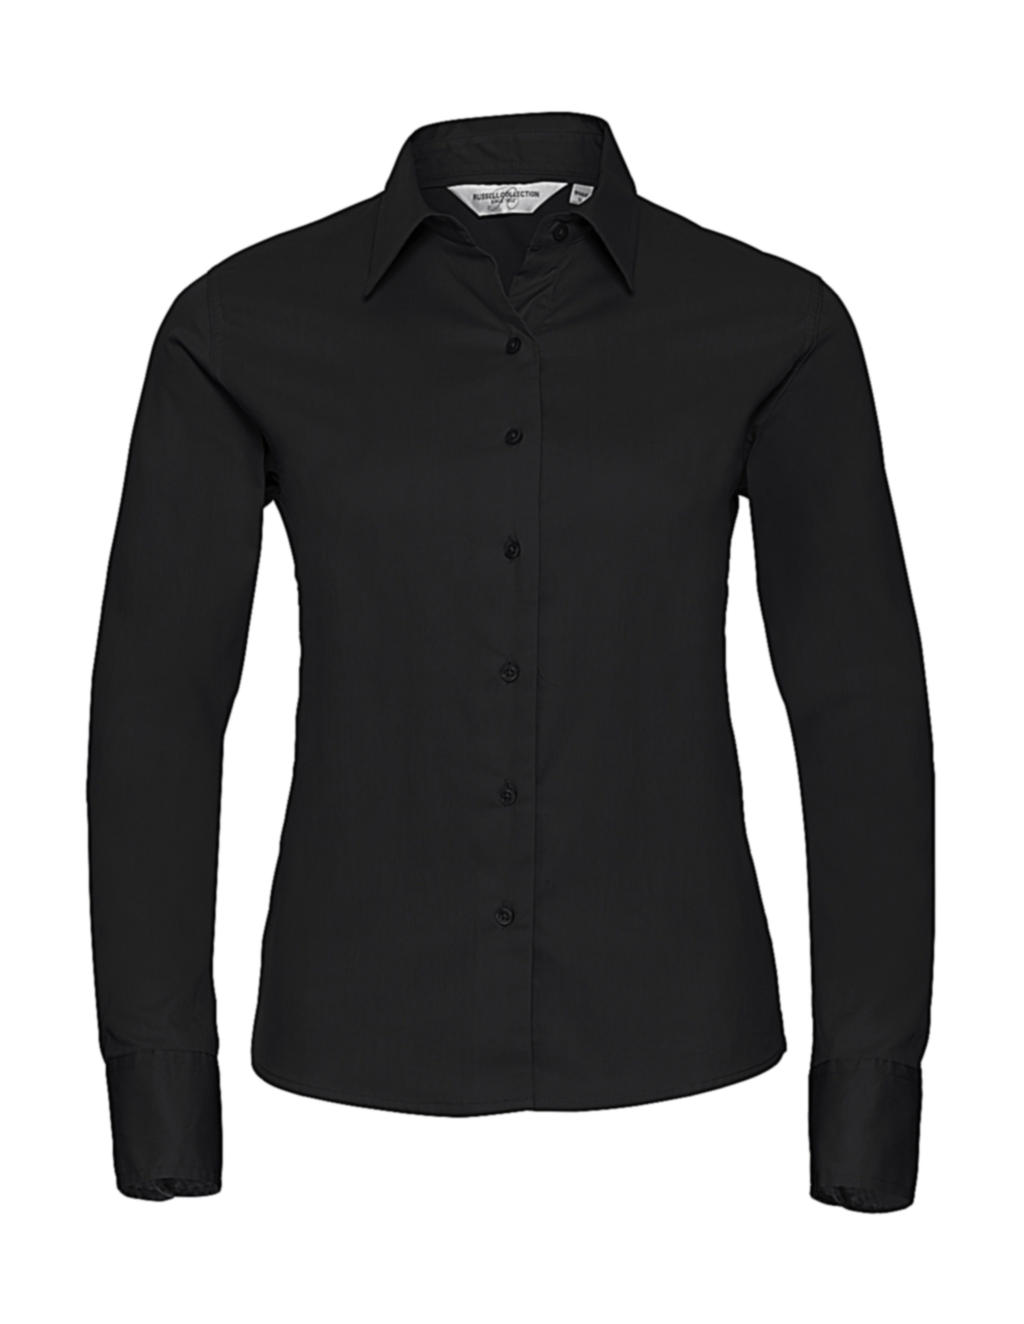  Ladies Classic Twill Shirt LS  in Farbe Black